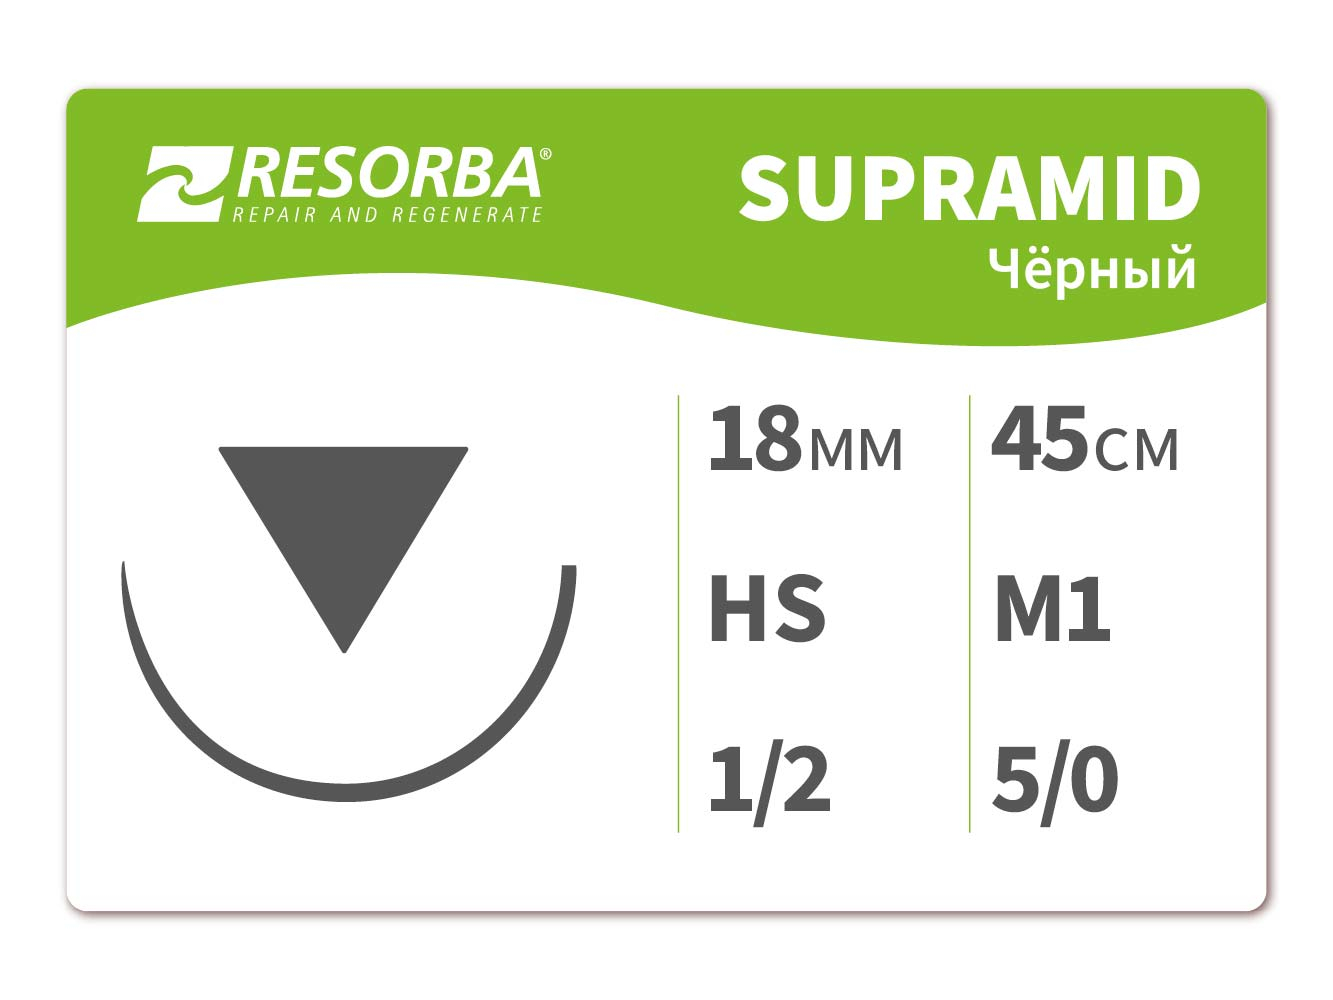 Супрамид черный М 1 (5.0) 45 см, HS 18.(6111), RESORBA (Германия)